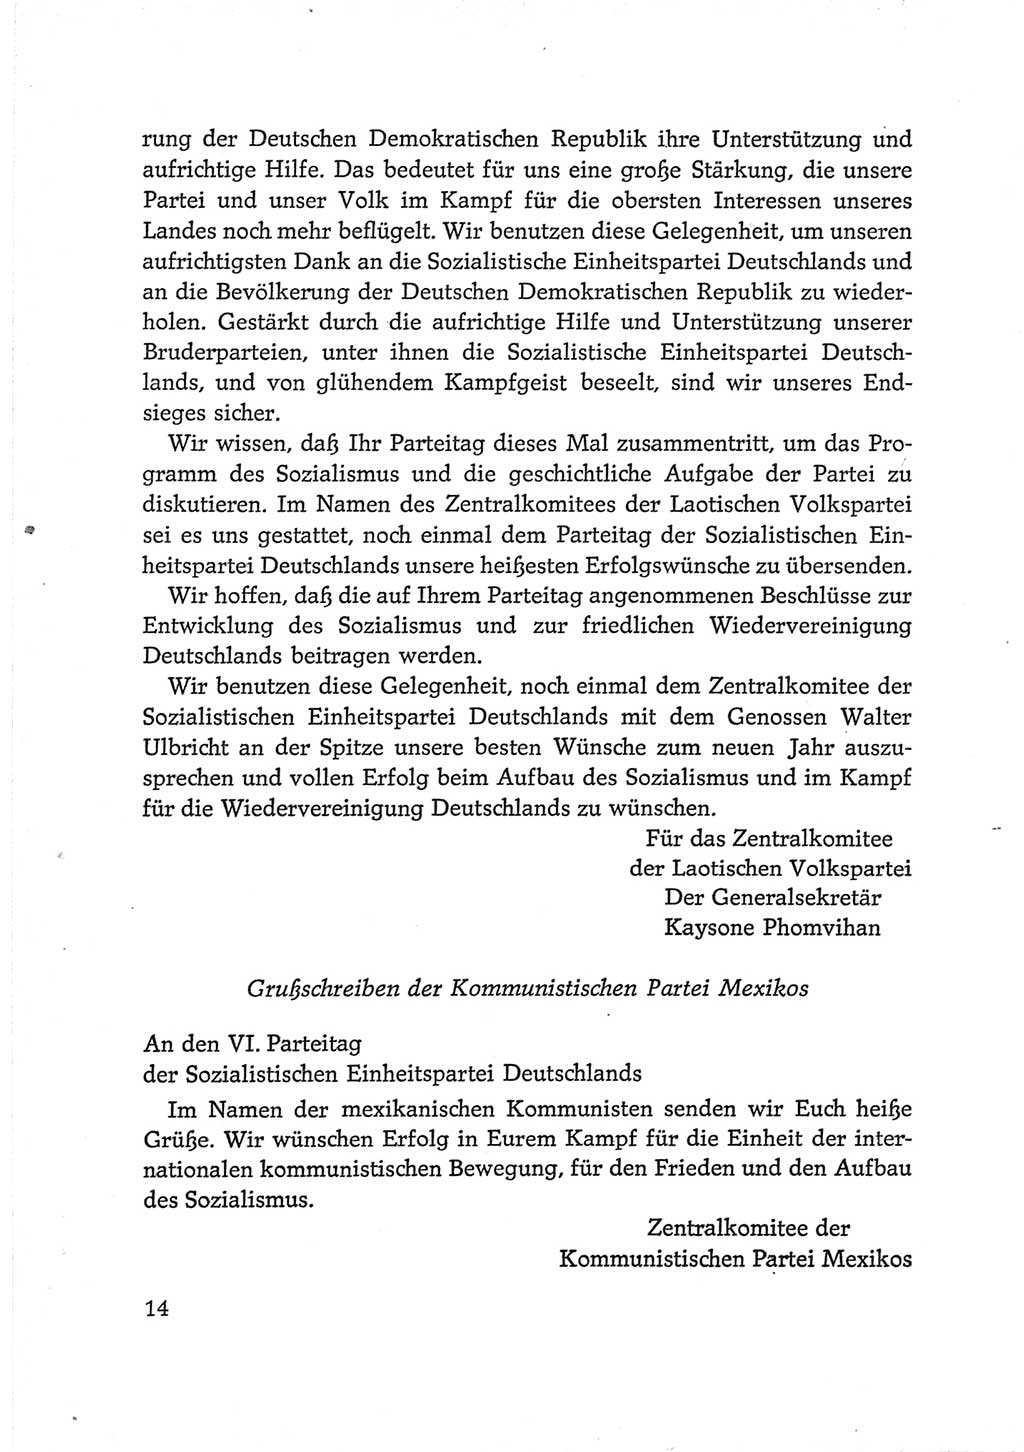 Protokoll der Verhandlungen des Ⅵ. Parteitages der Sozialistischen Einheitspartei Deutschlands (SED) [Deutsche Demokratische Republik (DDR)] 1963, Band Ⅲ, Seite 14 (Prot. Verh. Ⅵ. PT SED DDR 1963, Bd. Ⅲ, S. 14)